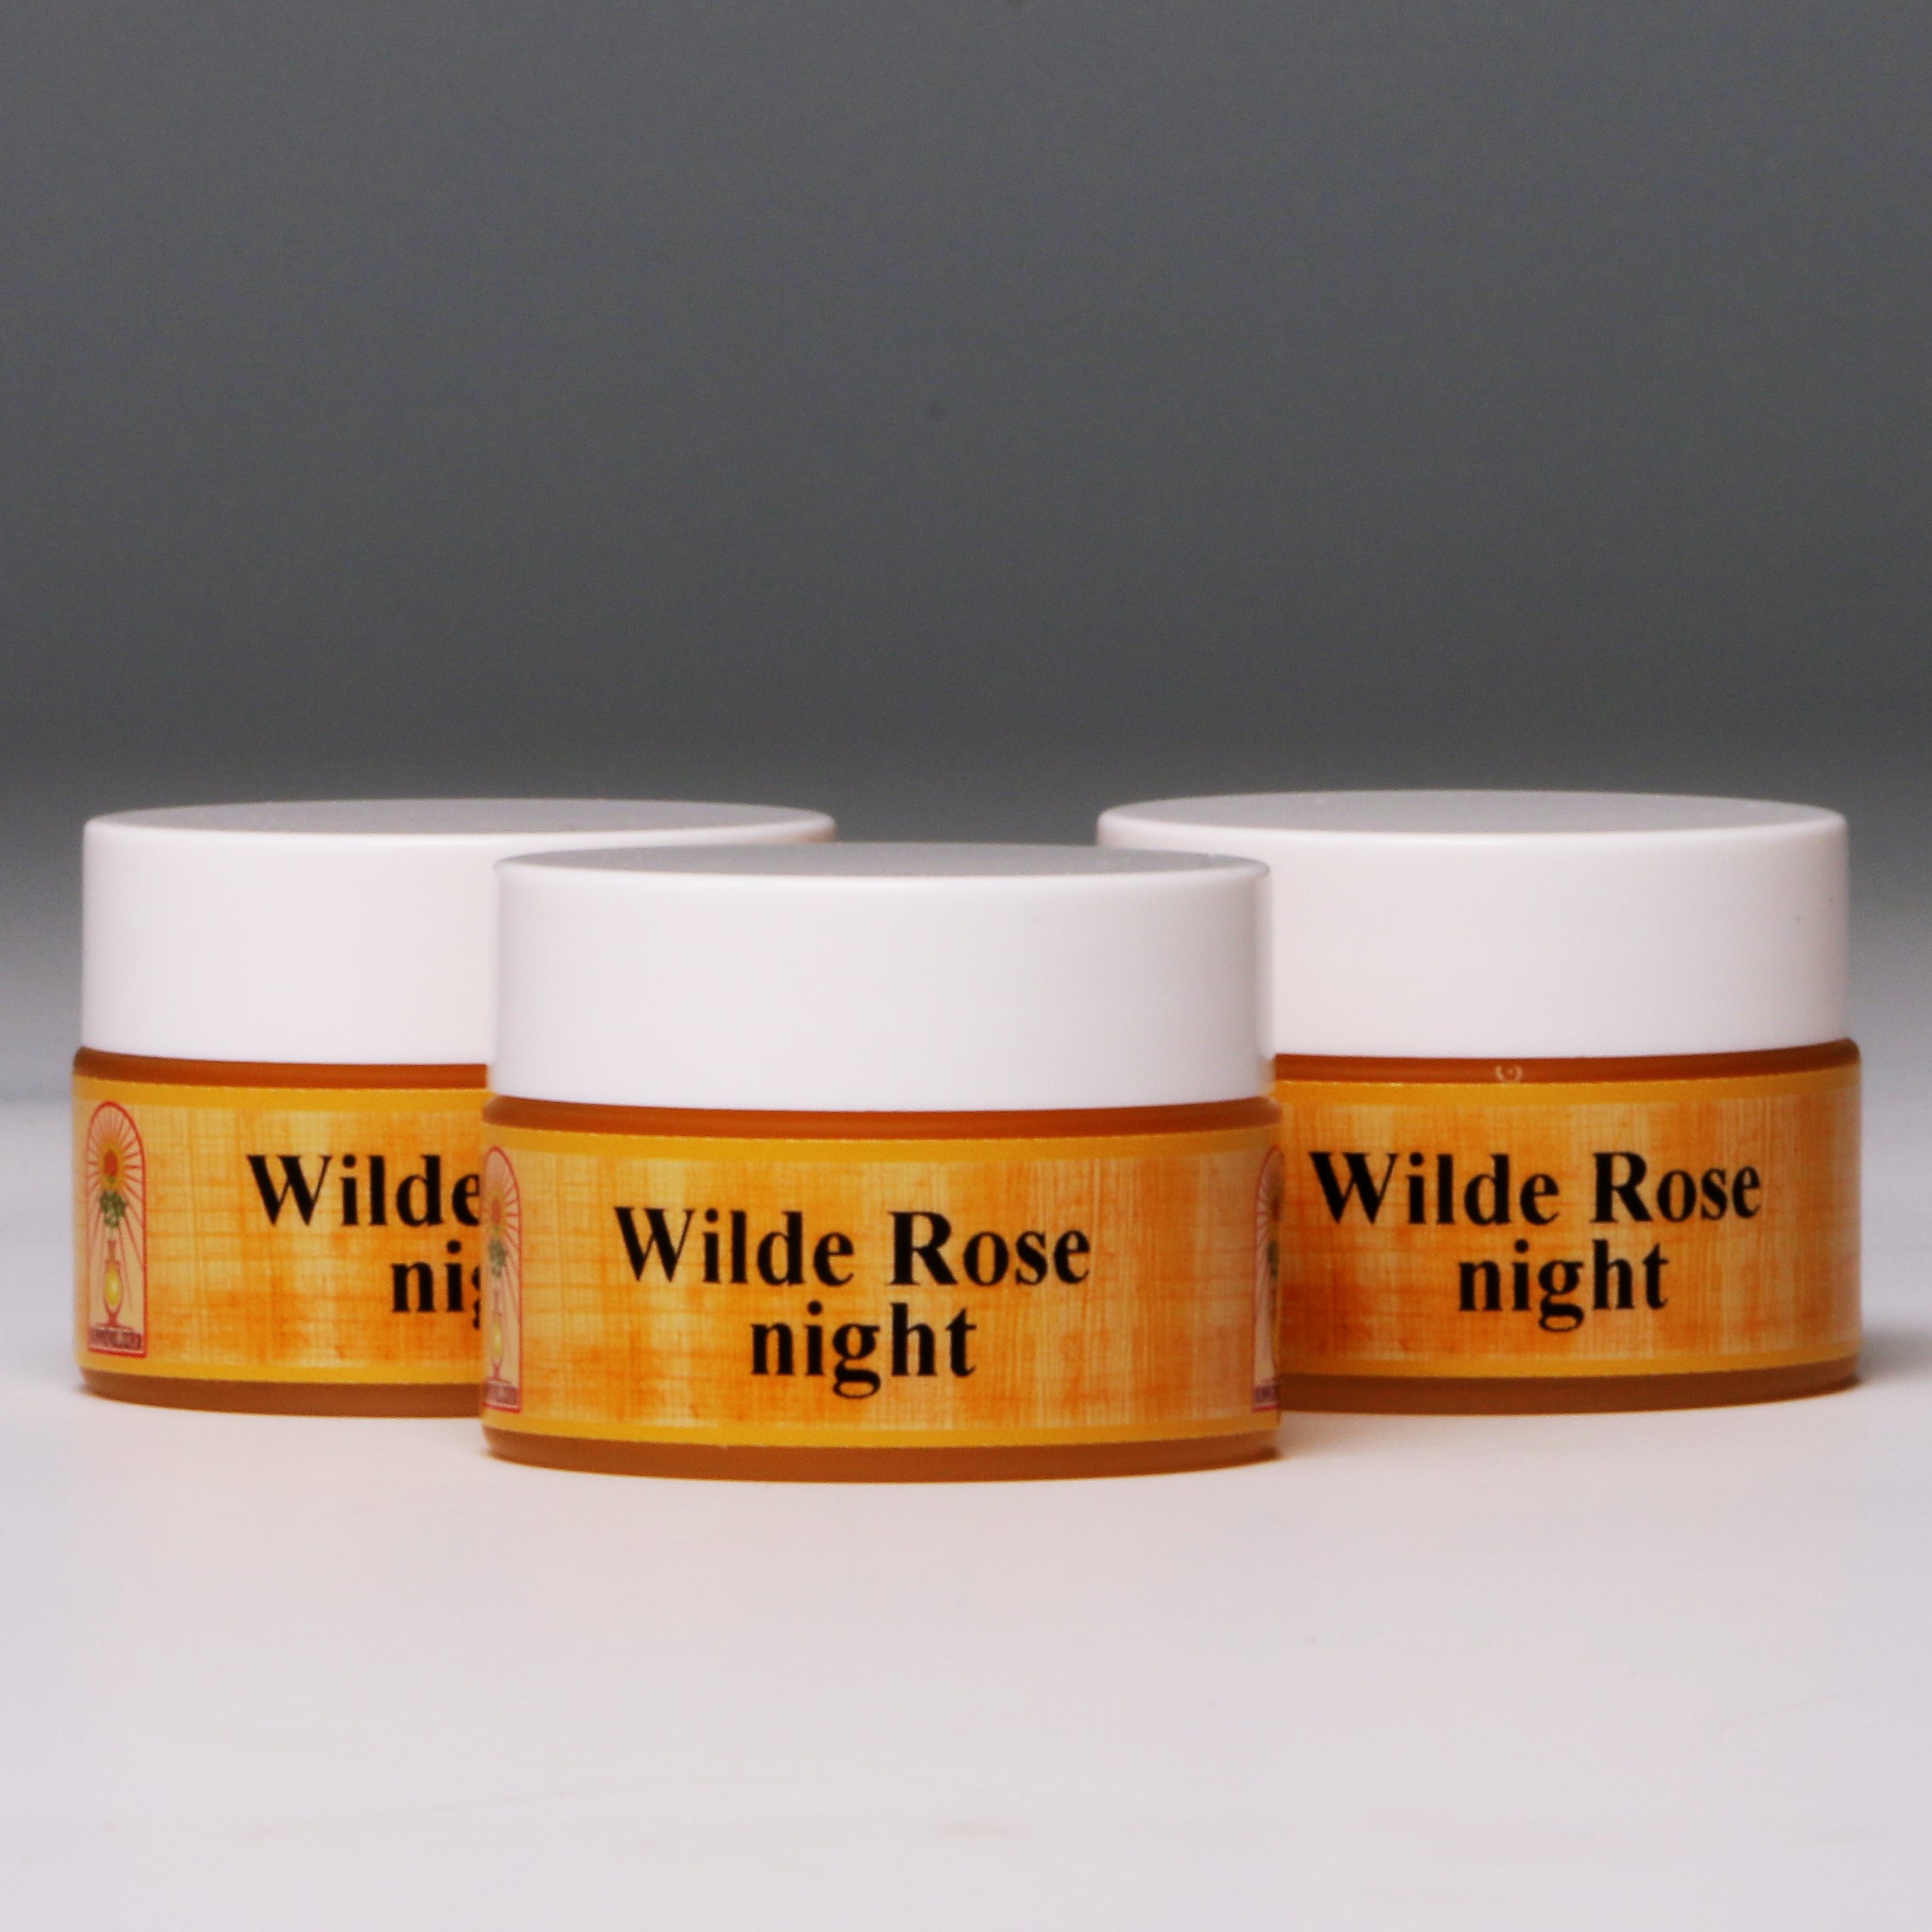 Wilde Rose night Gesichtscreme (3x15ml)  günstig bestellen bei Linny-Naturkost